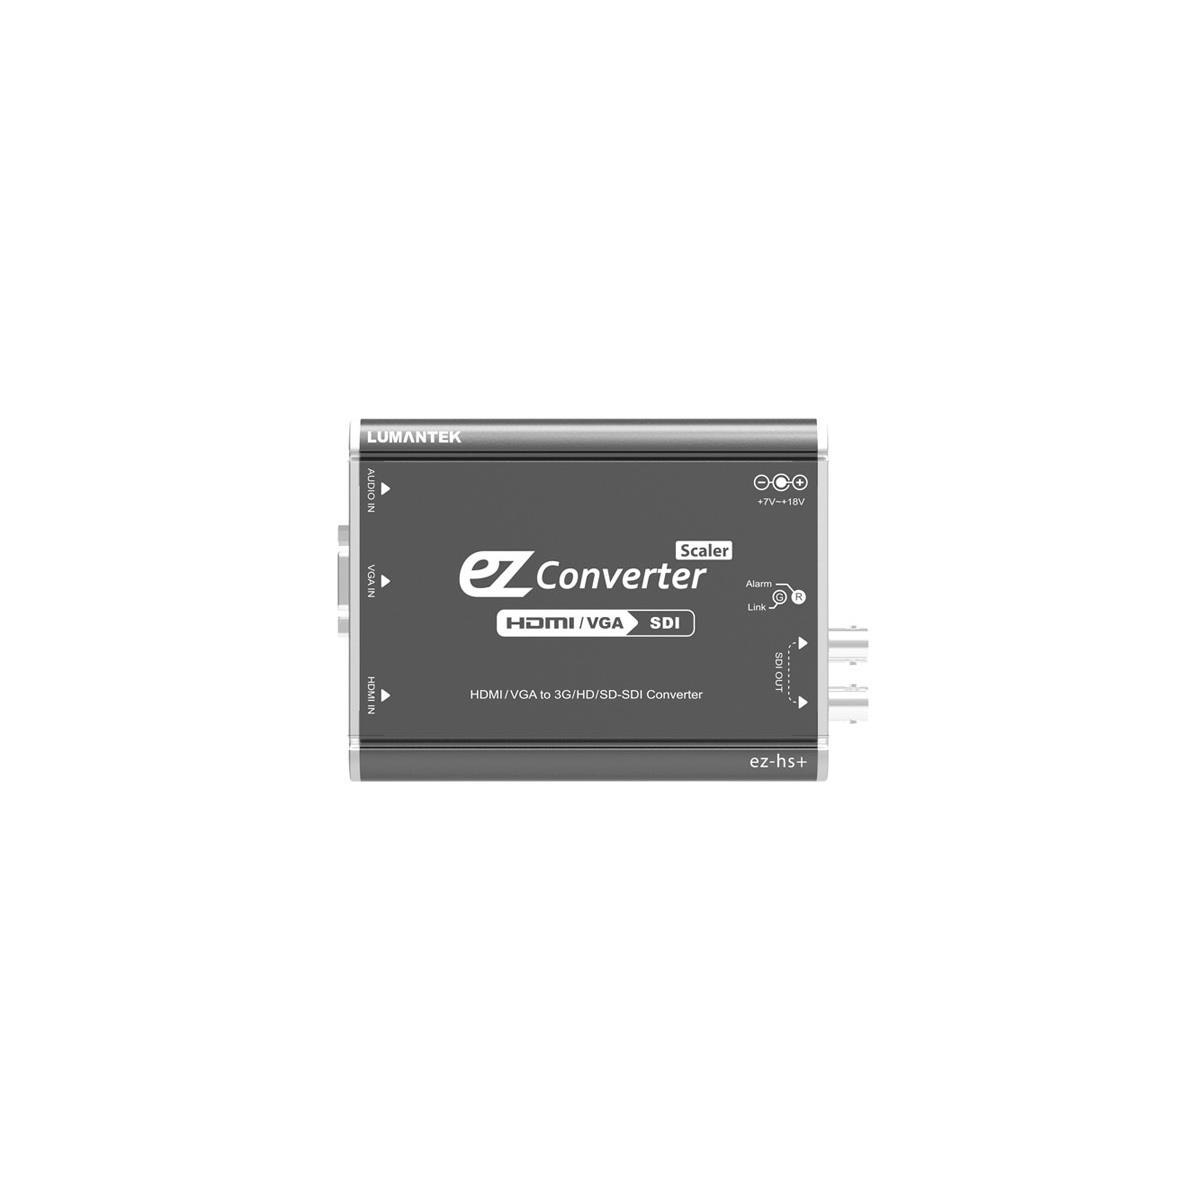 Lumantek ez-HS+ Конвертер HDMI/VGA в 3G/HD/SD-SDI со скалером #EZ-CONVERTER HS+